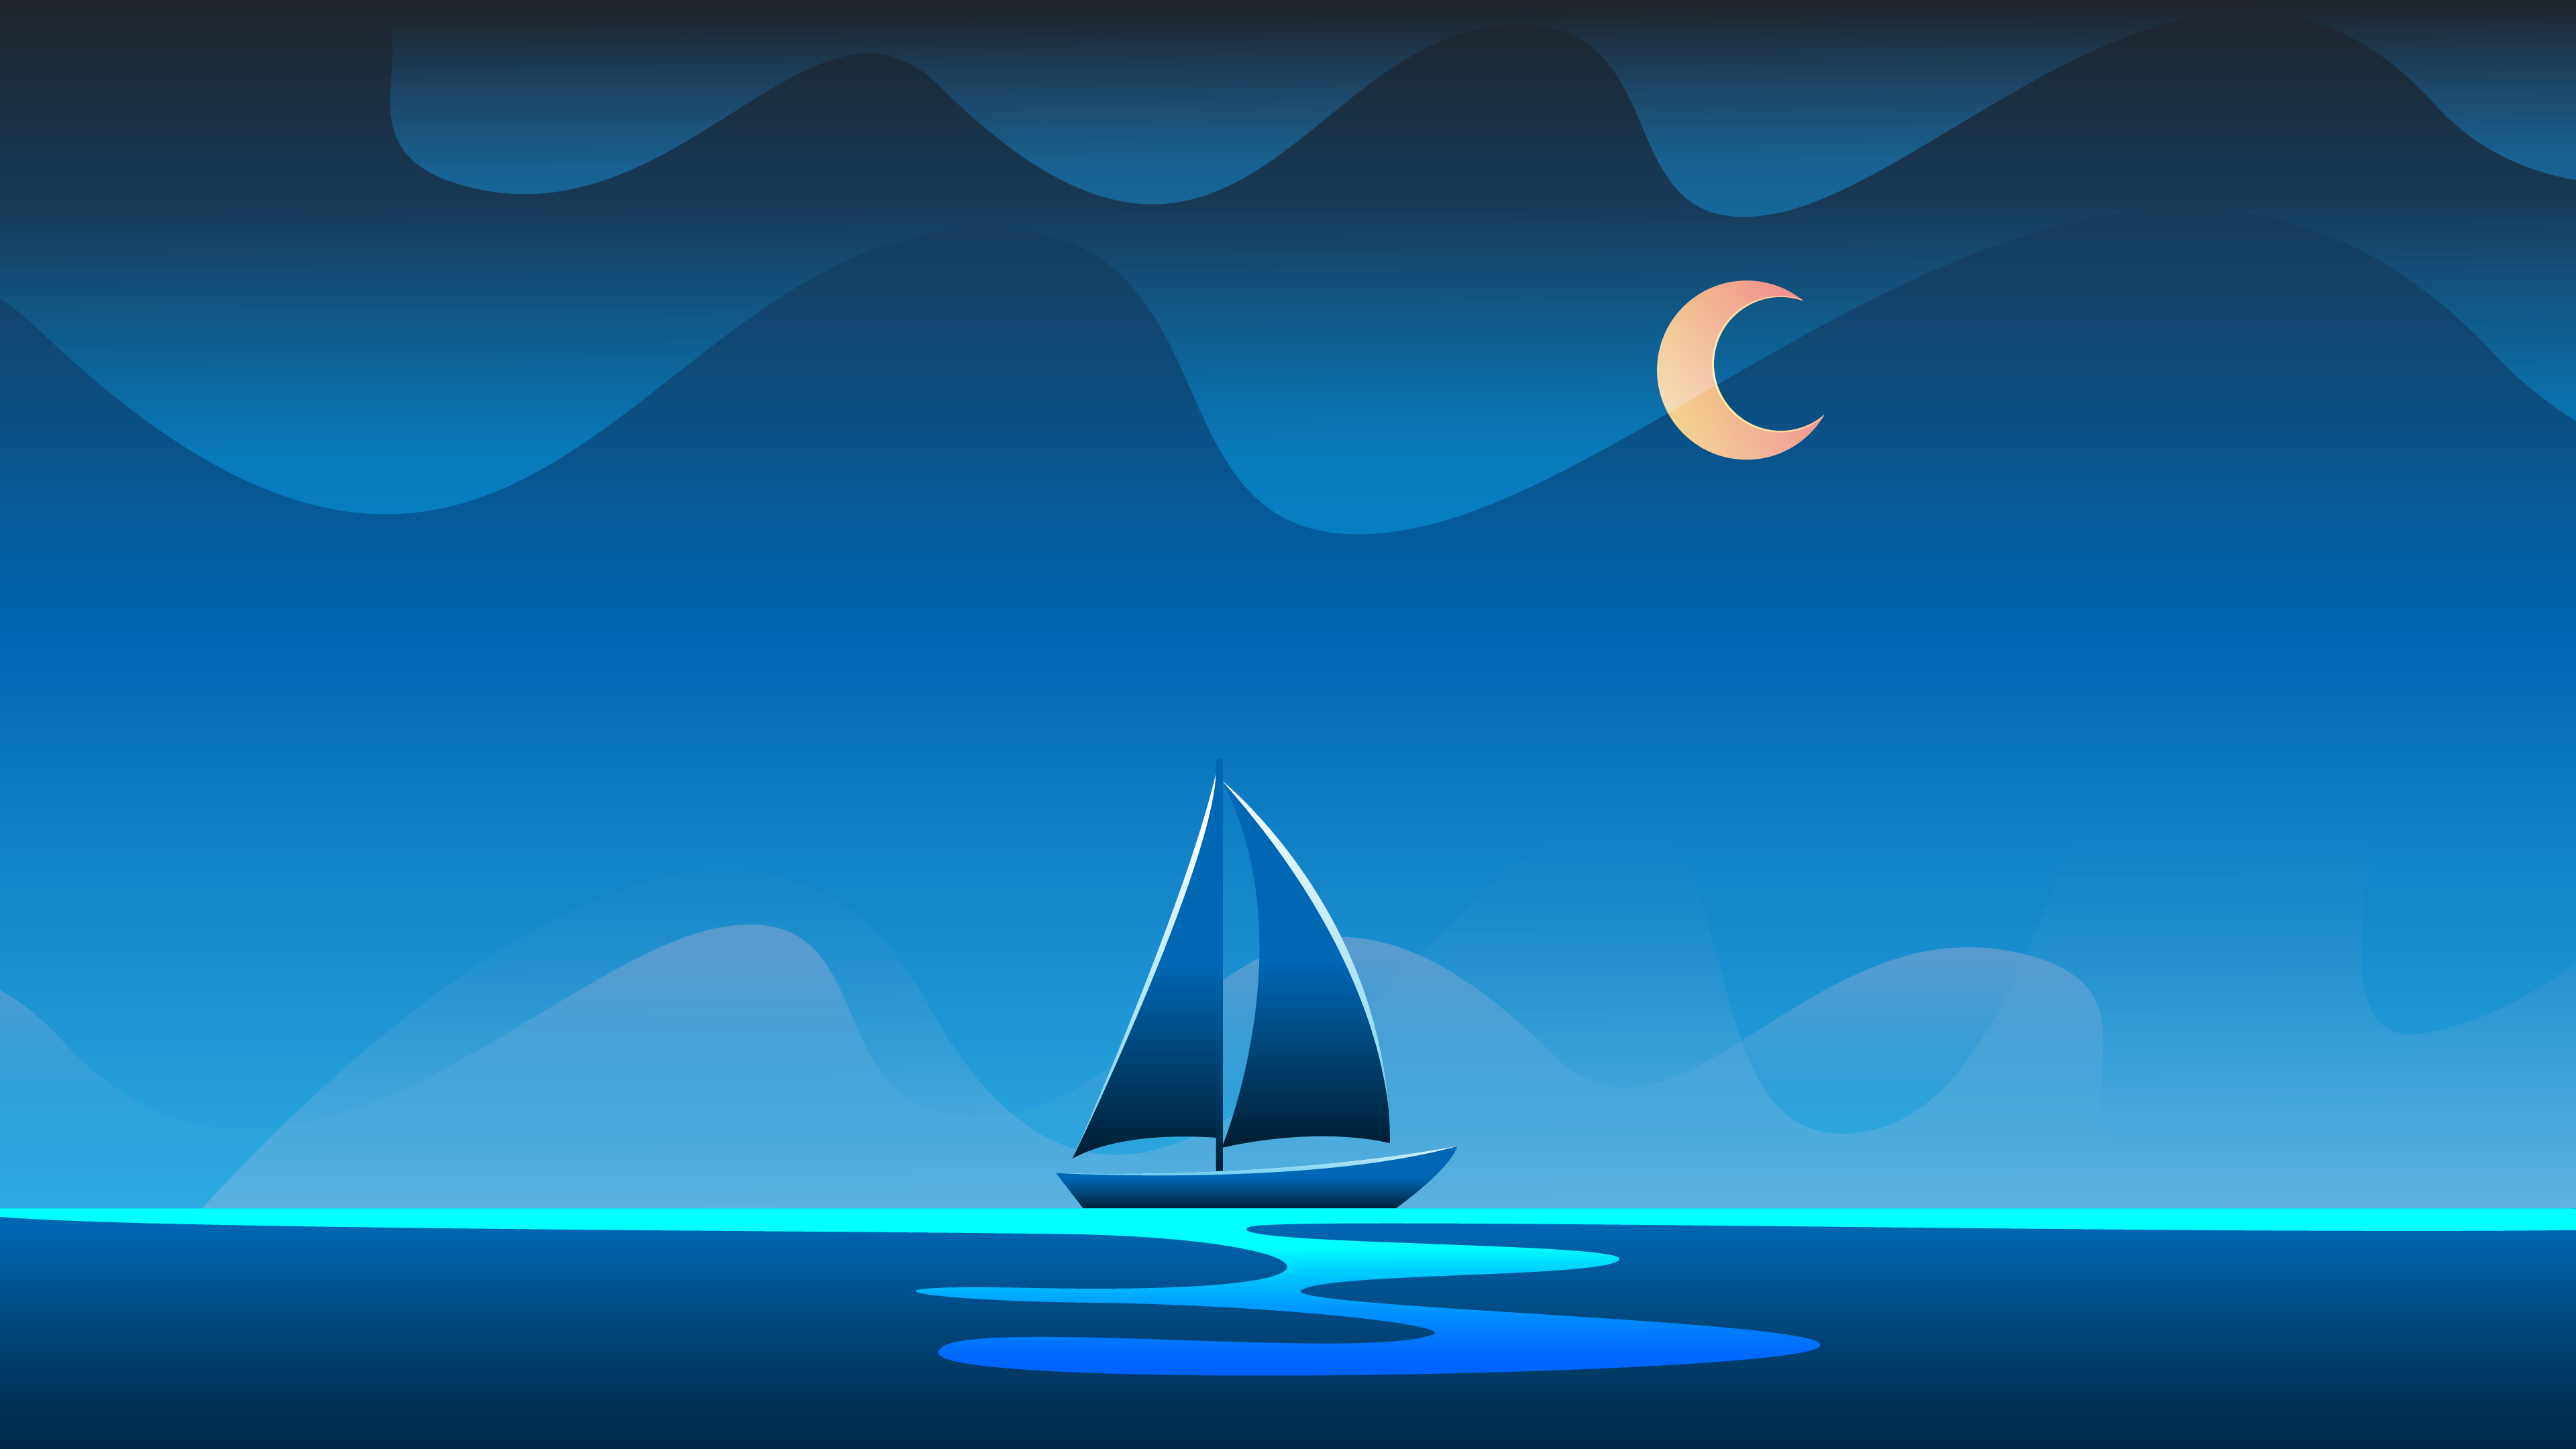 Hình nền tối giản của đại dương ban đêm sẽ đưa bạn vào một chuyến phiêu lưu khám phá thế giới đầy huyền bí và lãng mạn. Với một gam màu xanh đậm đà và nhiều chi tiết độc đáo, hình nền tối giản của đại dương ban đêm sẽ không khó để đưa bạn đến những giây phút giải trí thật tuyệt vời. Ấn vào ảnh liên quan ngay bây giờ để khám phá nhé!